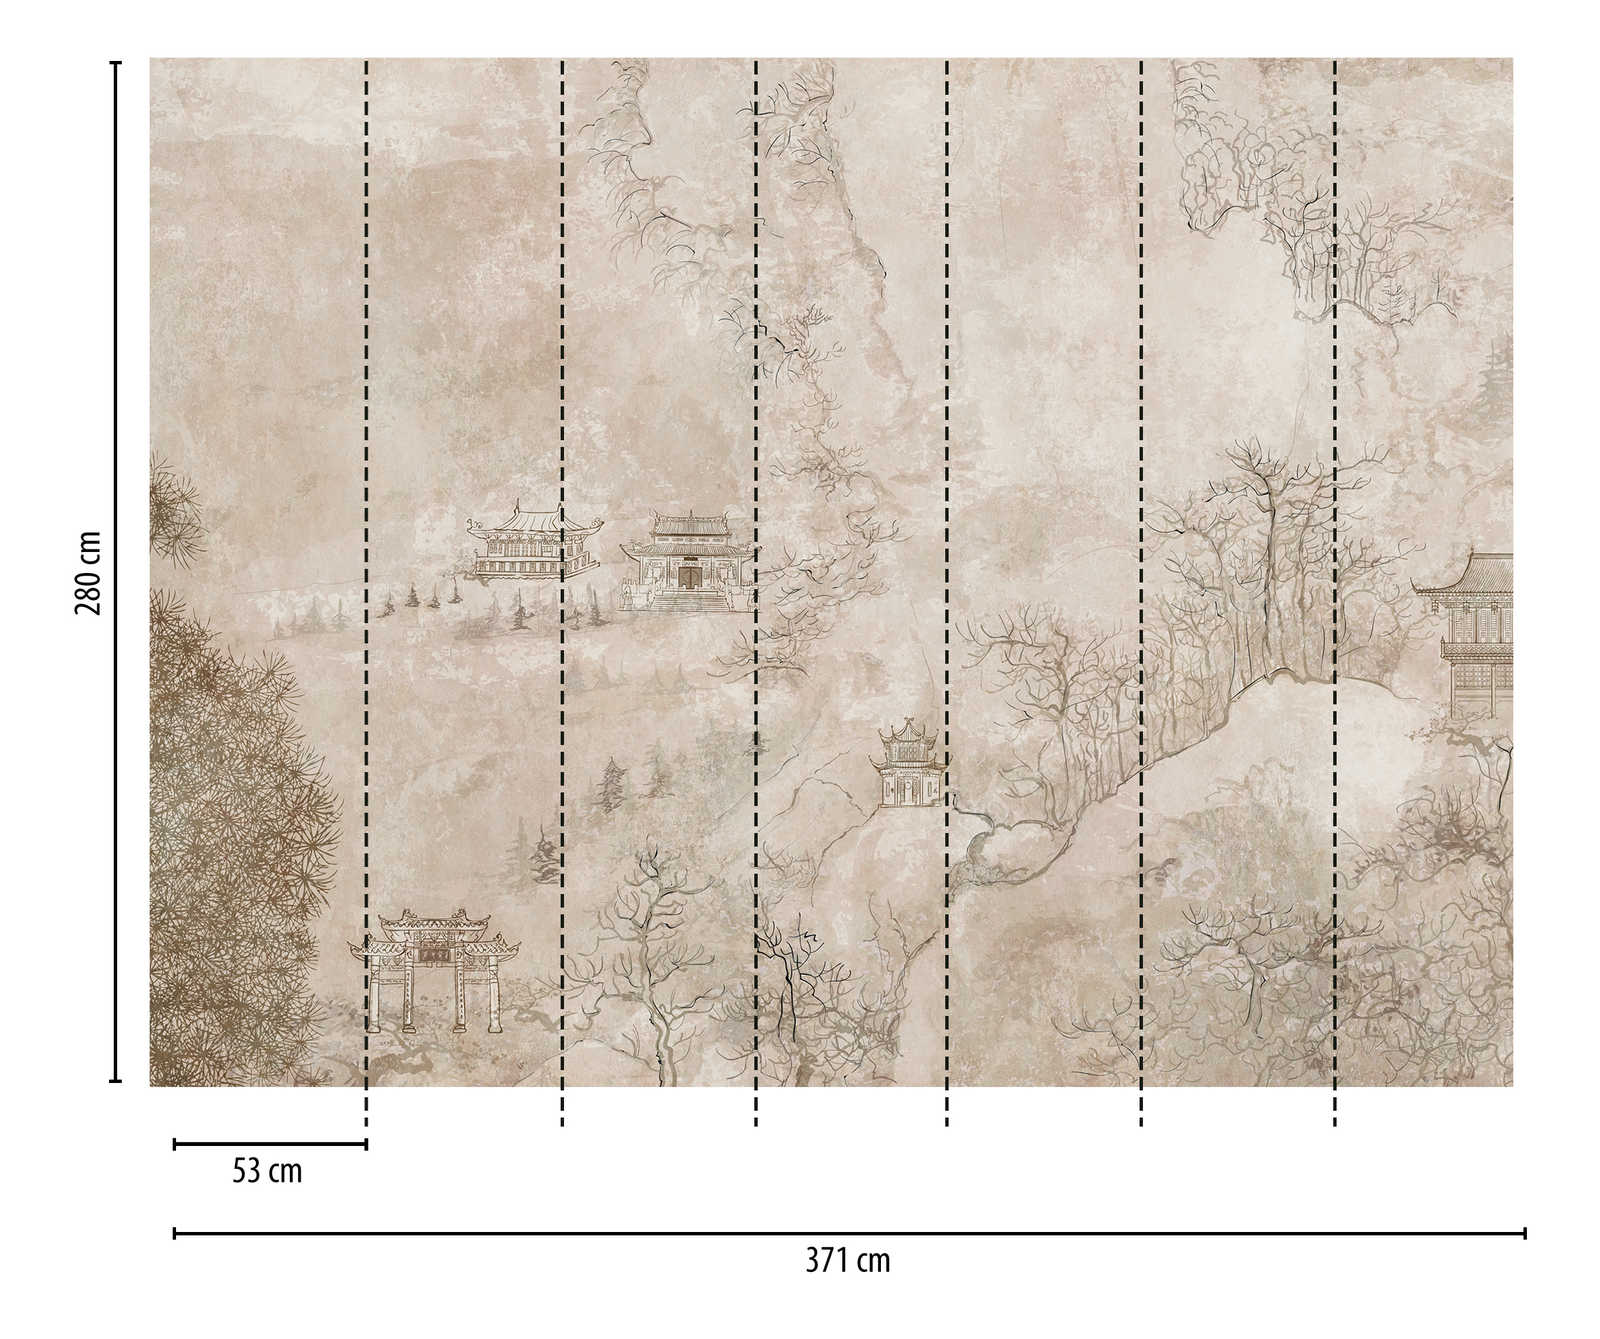             Tapeten-Neuheit – Motivtapete Asien Retro Design mit Landschaft und Pagoden
        